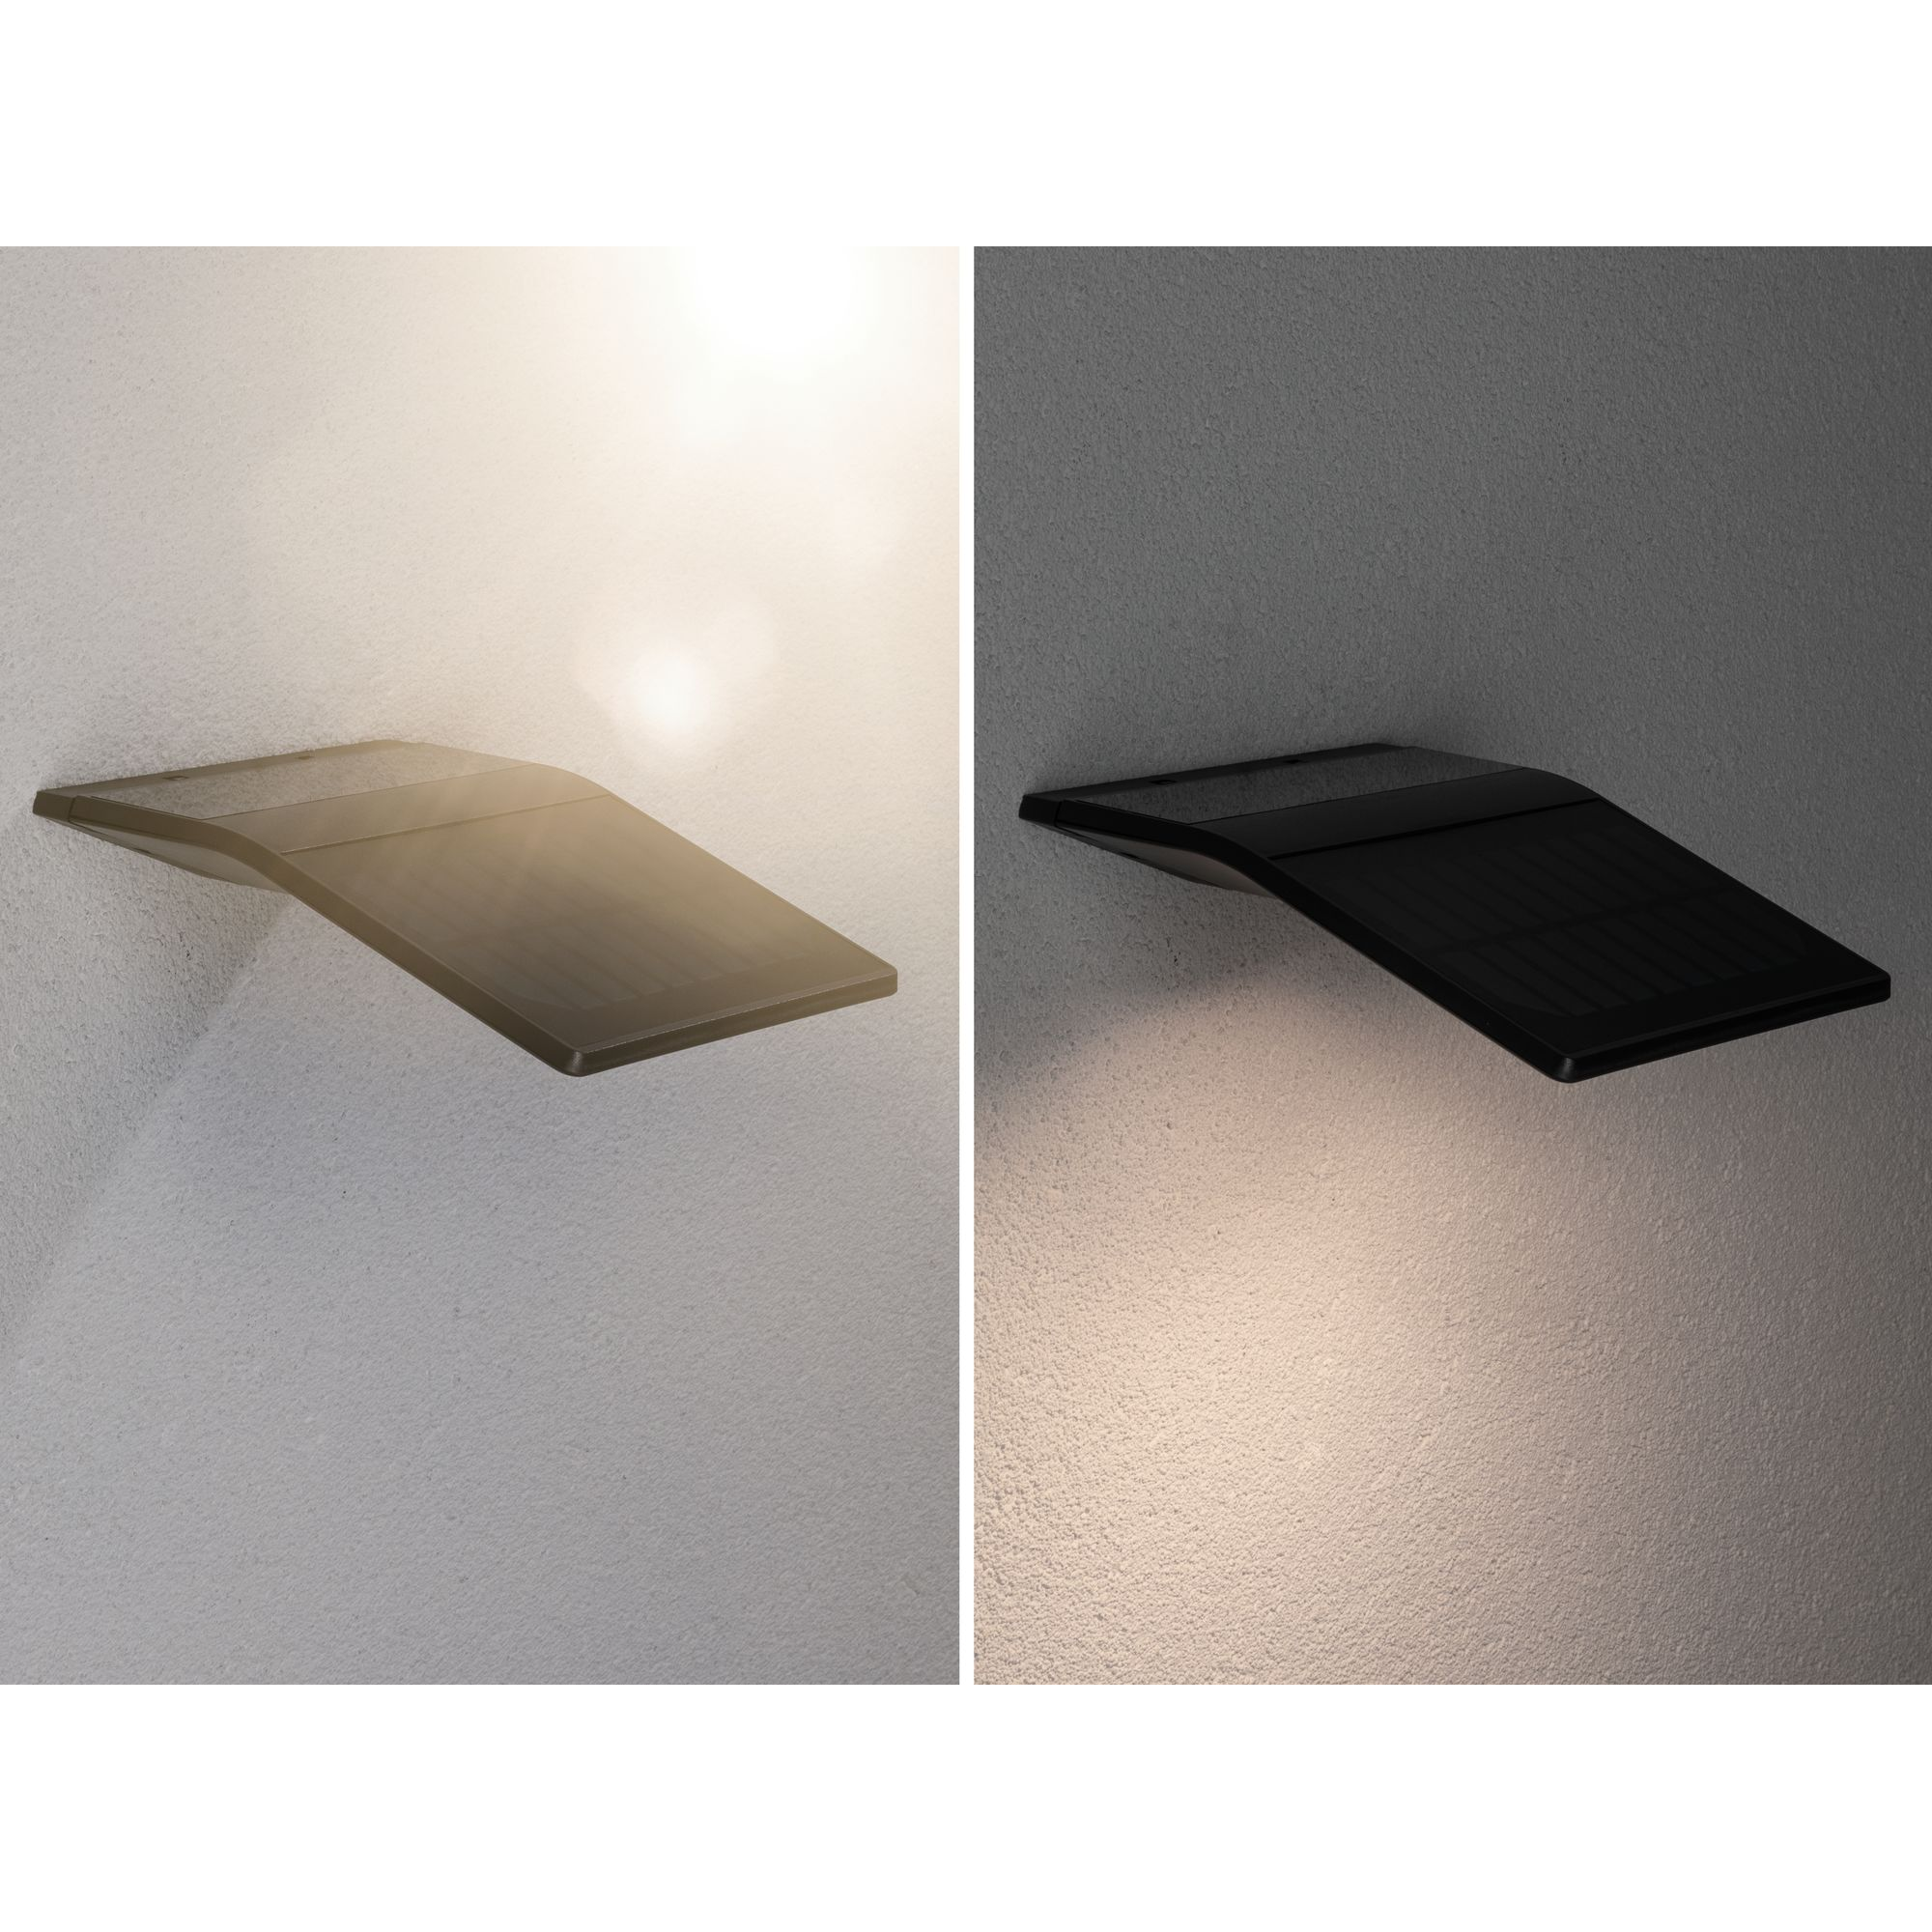 Solar-Wandleuchte 'Ryse' mit Bewegungsmelder anthrazit 15,4 x 4,1 x 14,7 cm + product picture